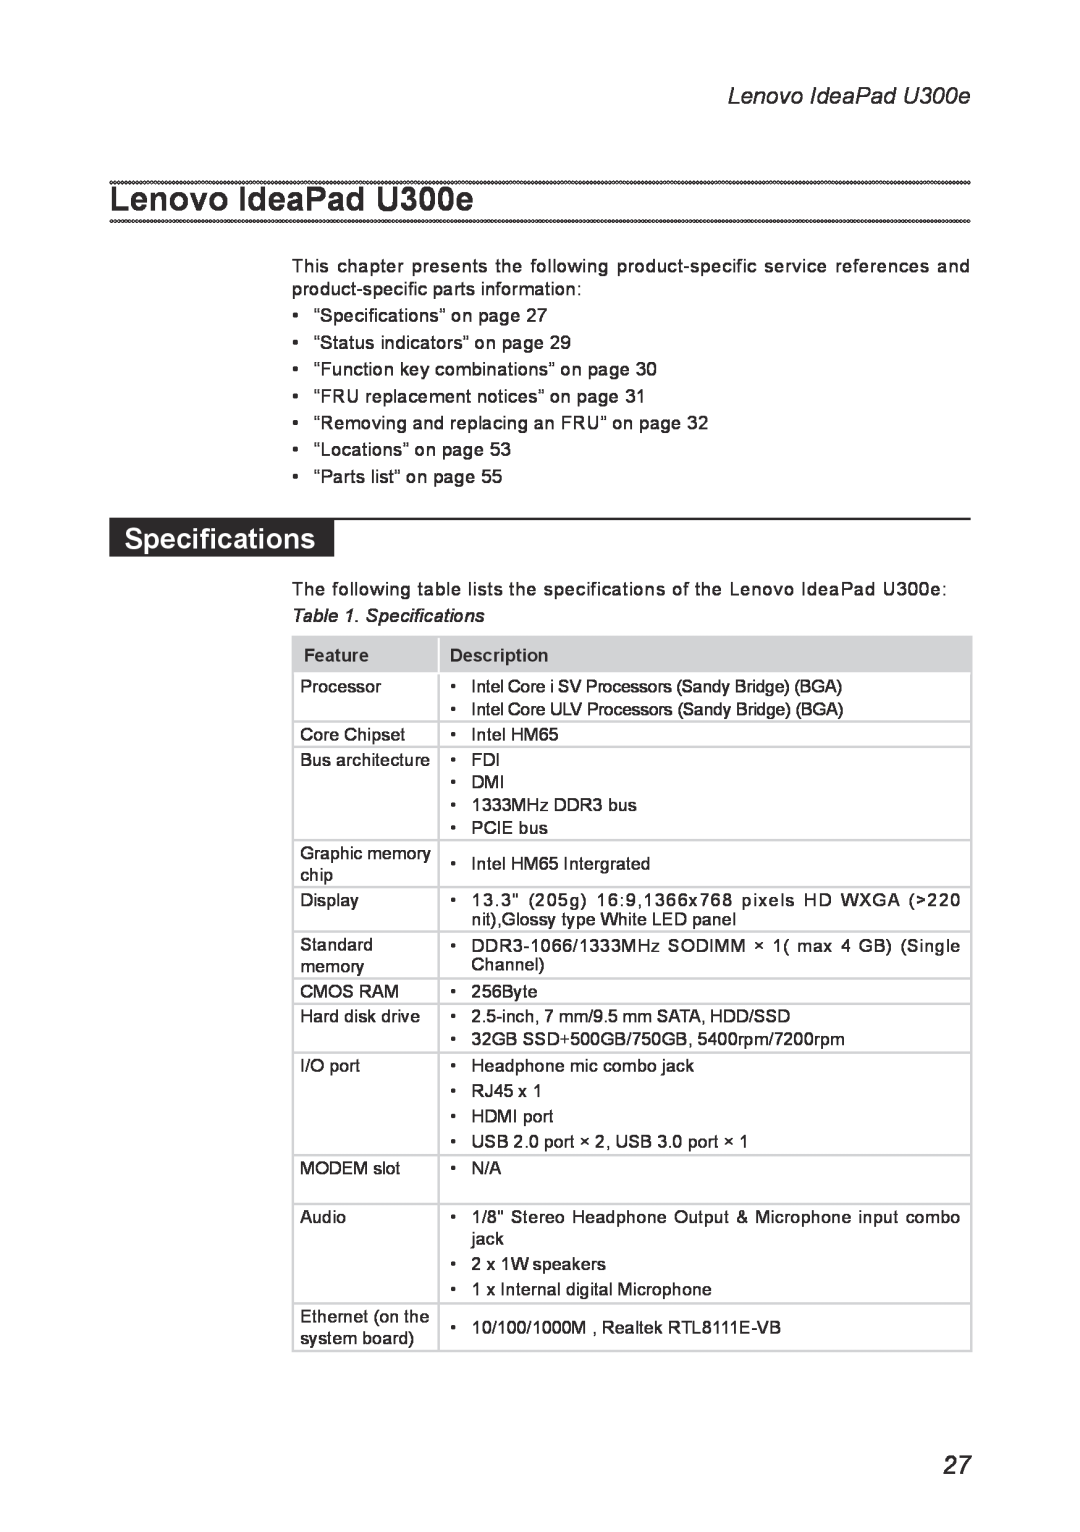 Lenovo U300E manual Lenovo IdeaPad U300e, Specifications 